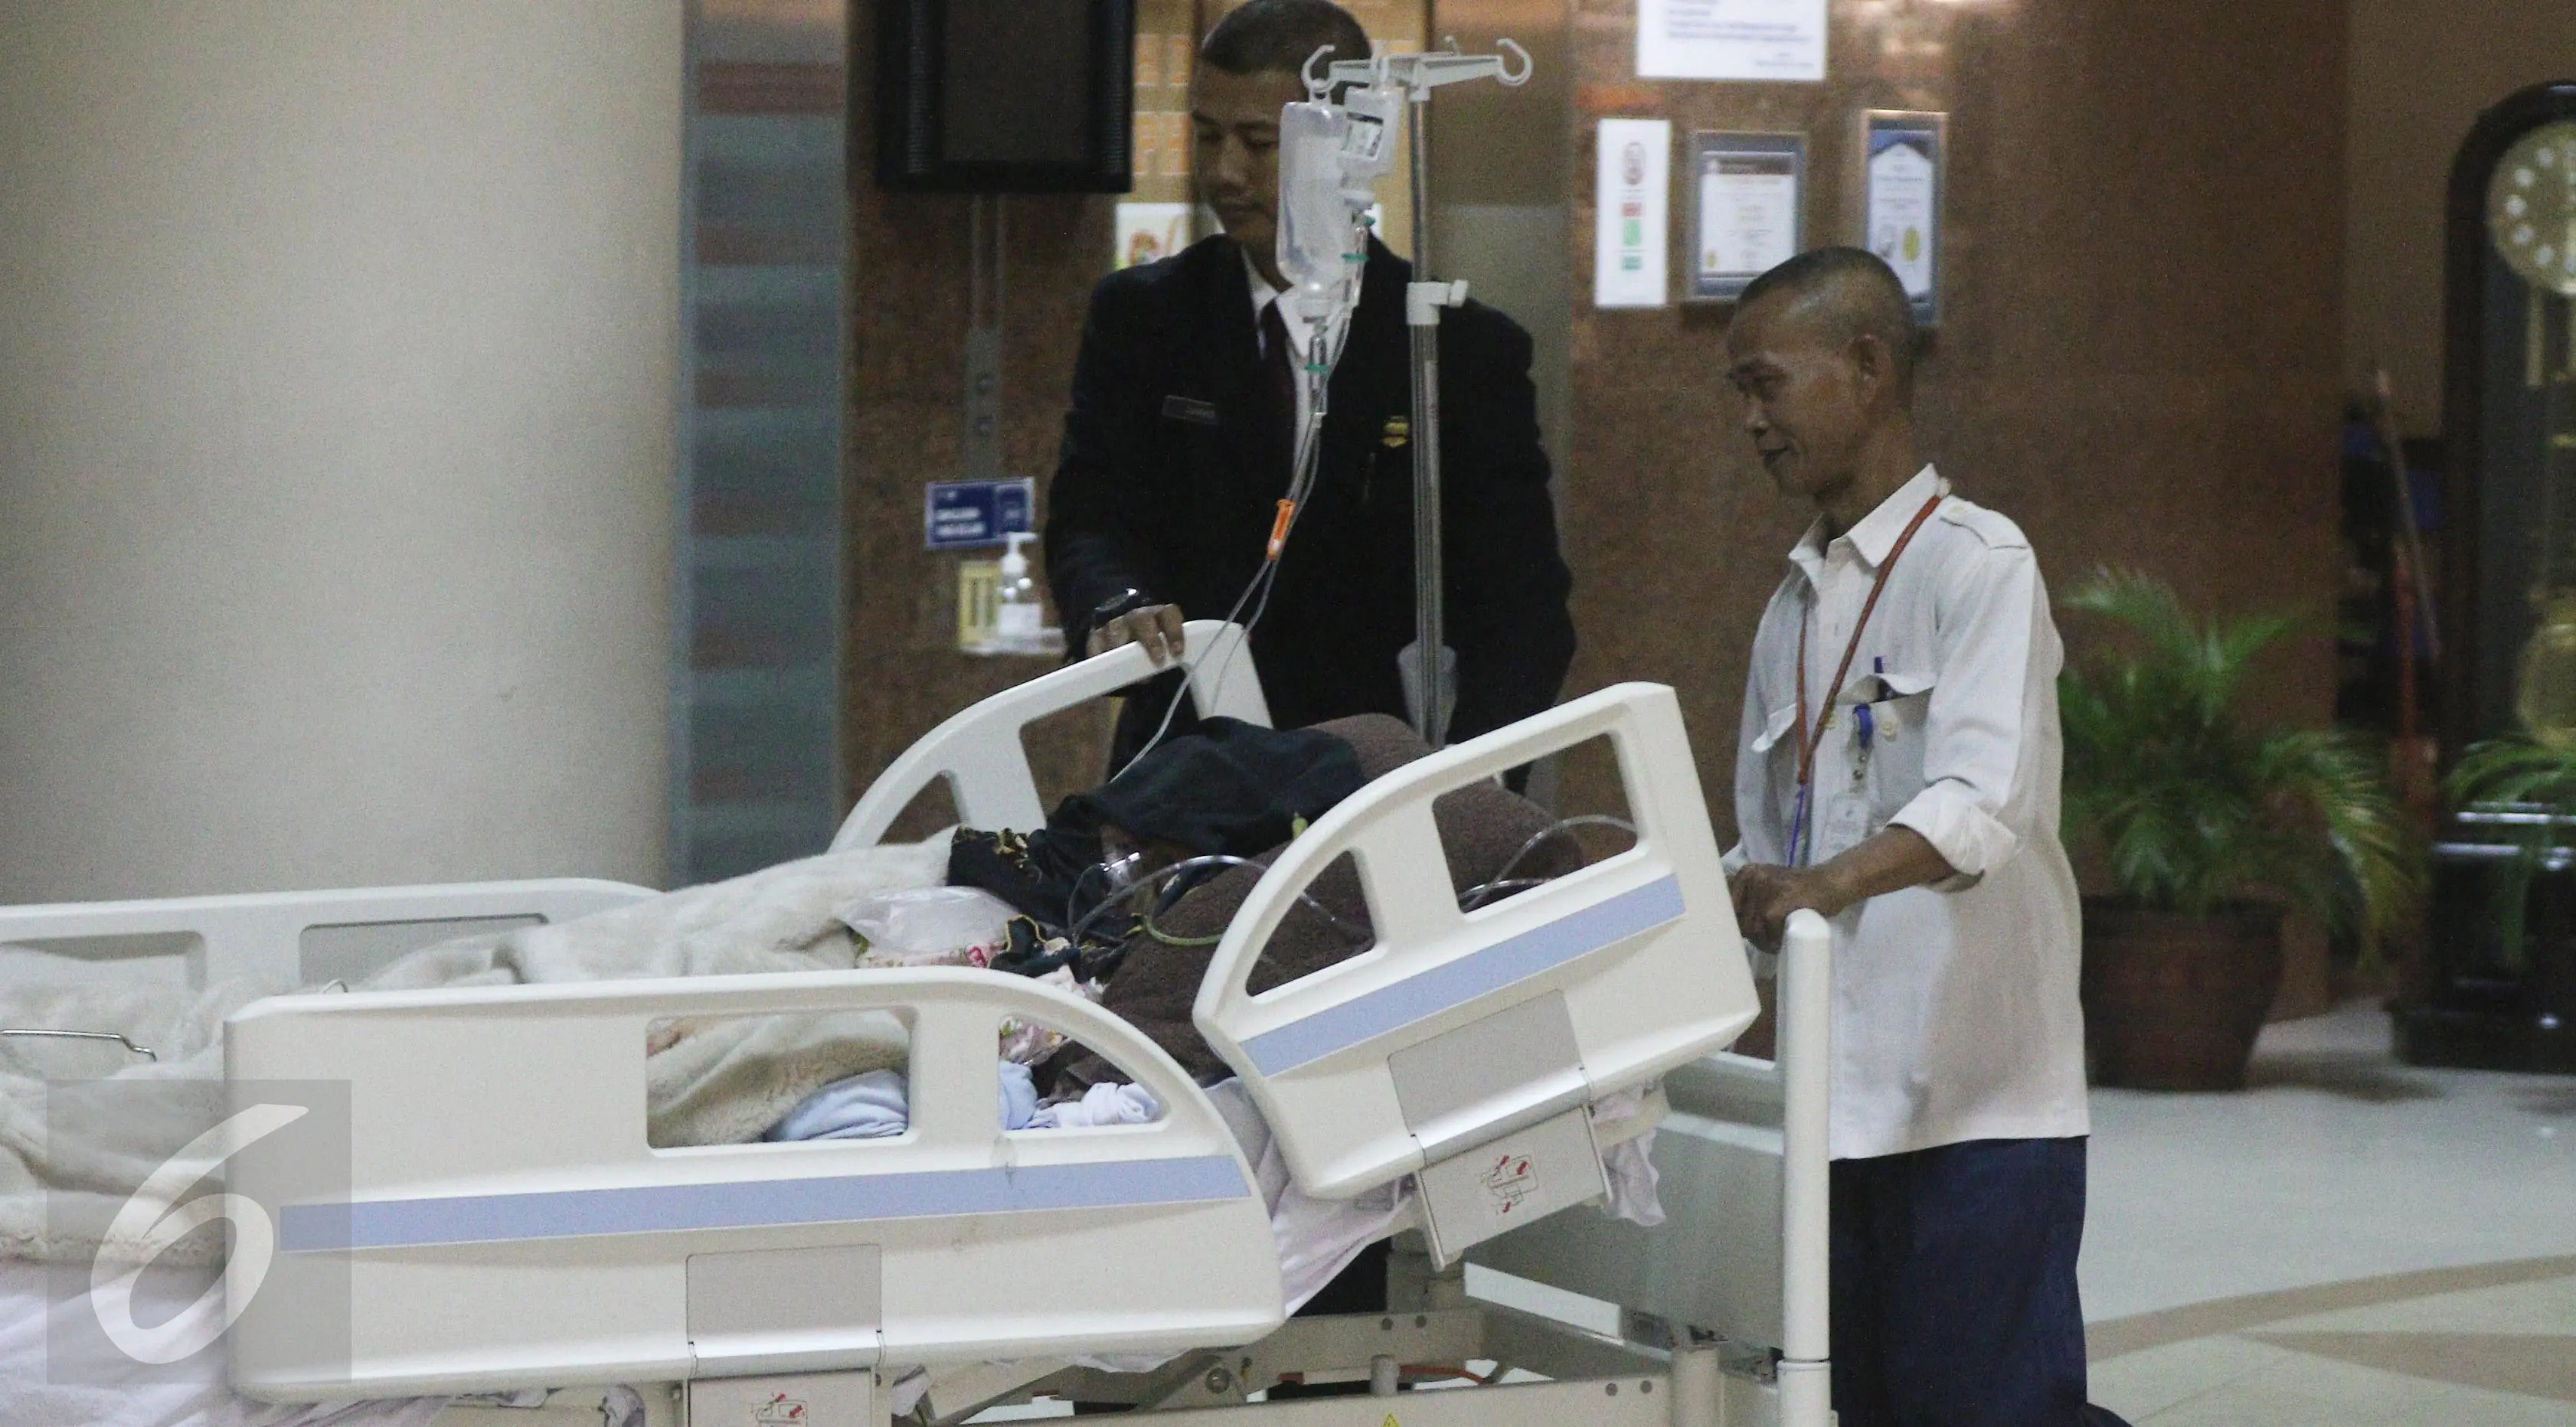 Petugas membawa Julia Perez alias Jupe ke ruang perawatan usai menjalani cuci darah di RSCM, Jakarta (21/4). Pelantun lagu Belah Duren tersebut terlihat terbaring lemah dengan kondisi kepala tertutup kain hitam. (Liputan6.com/Herman Zakharia)